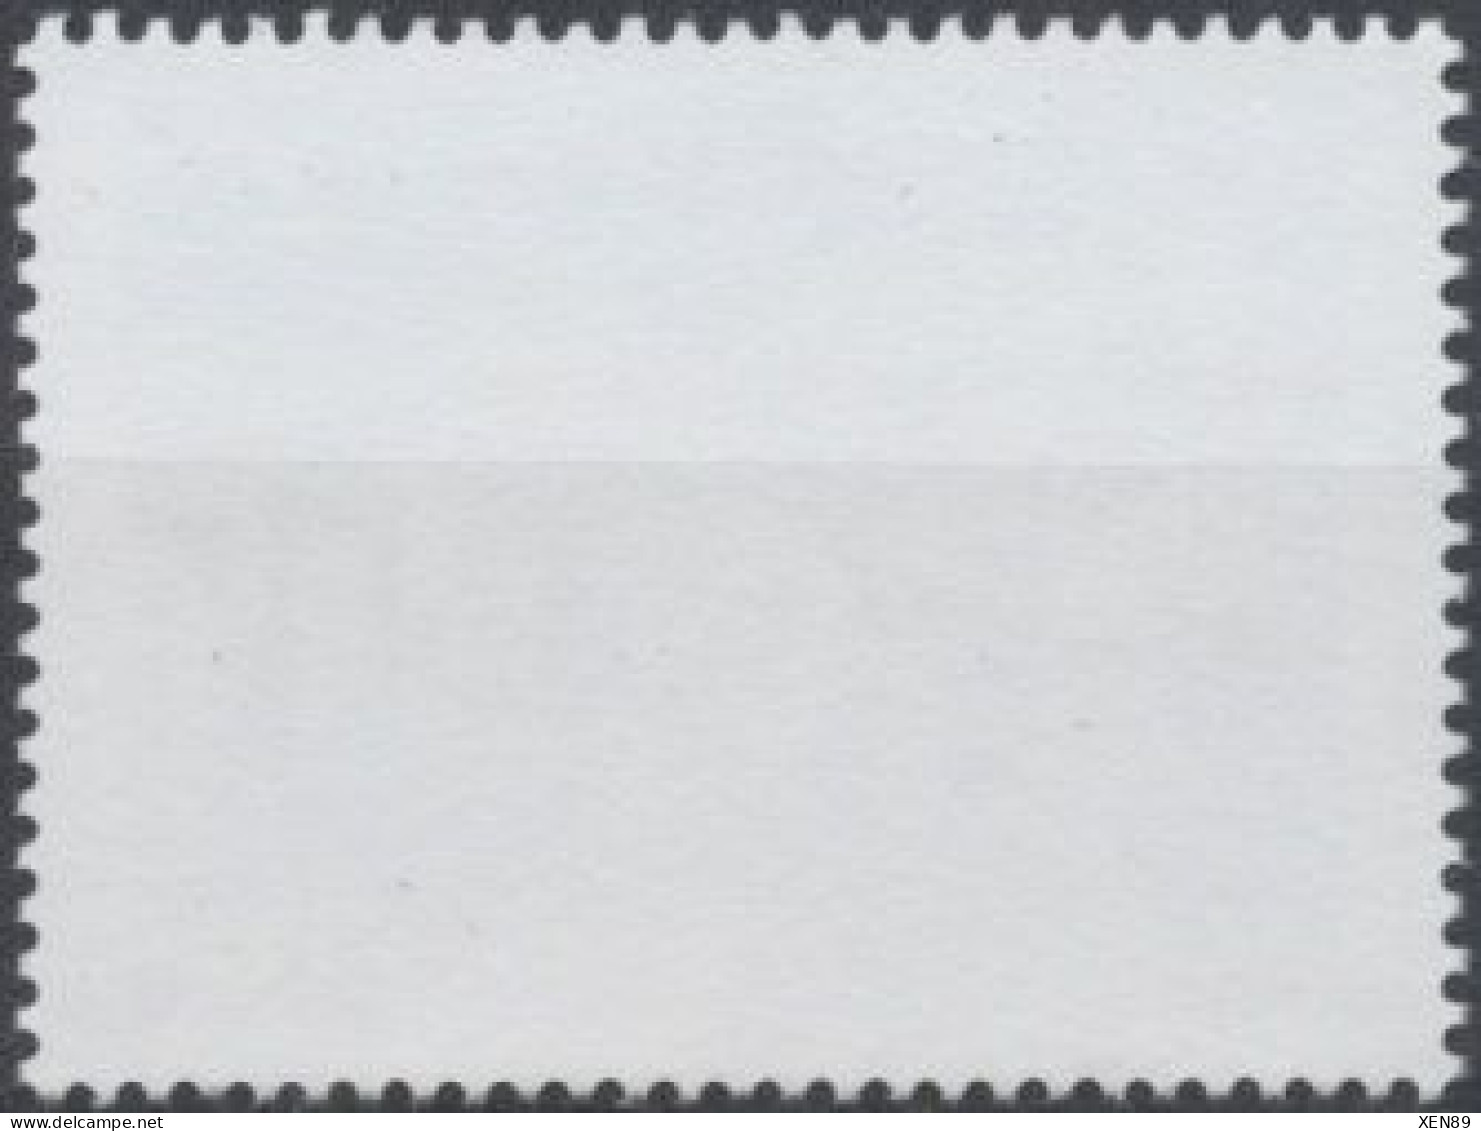 2010 - 4513 - Série Touristique - Villeneuve-sur-Lot. - Unused Stamps